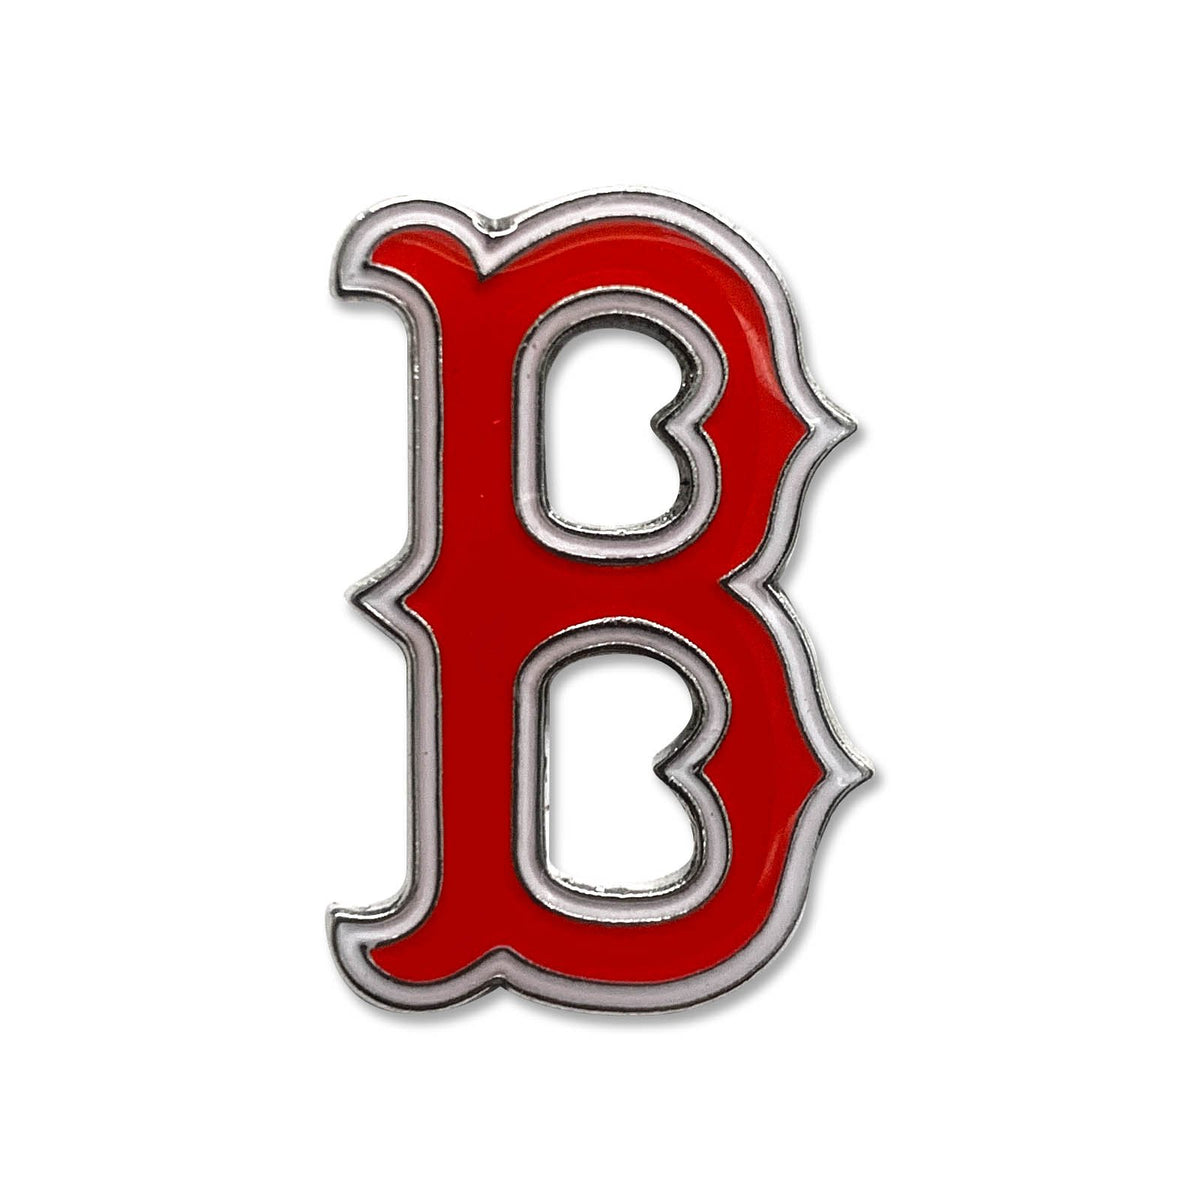 red circle white b logo